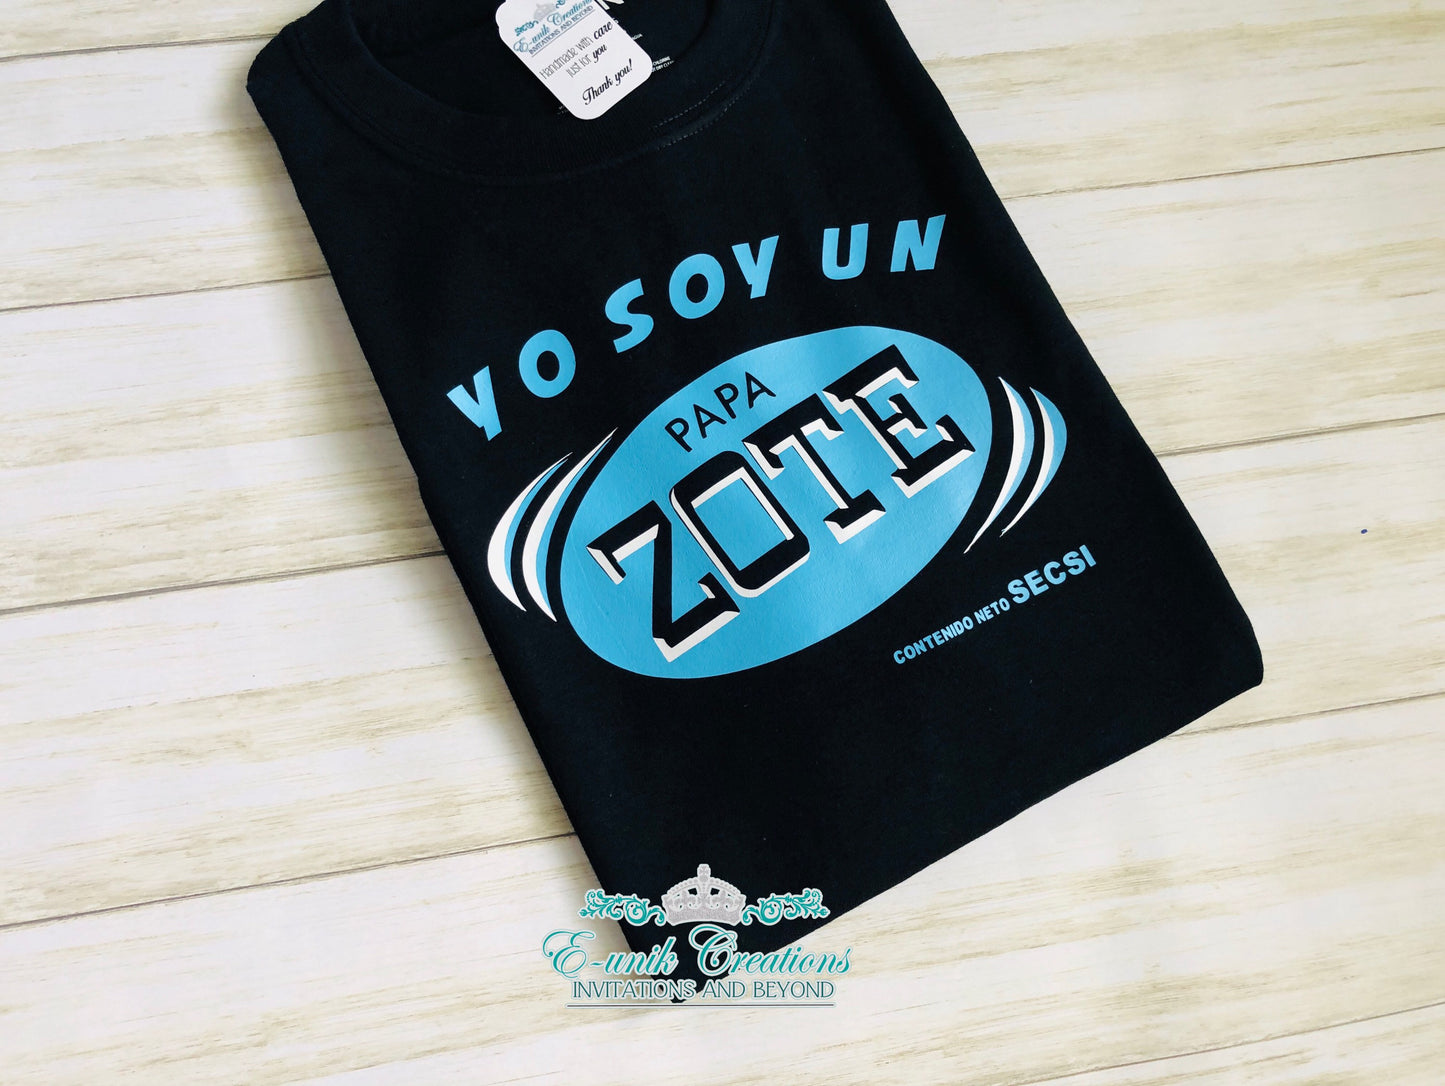 Father's Day Personalized T-shirt "Yo soy un papa zote"